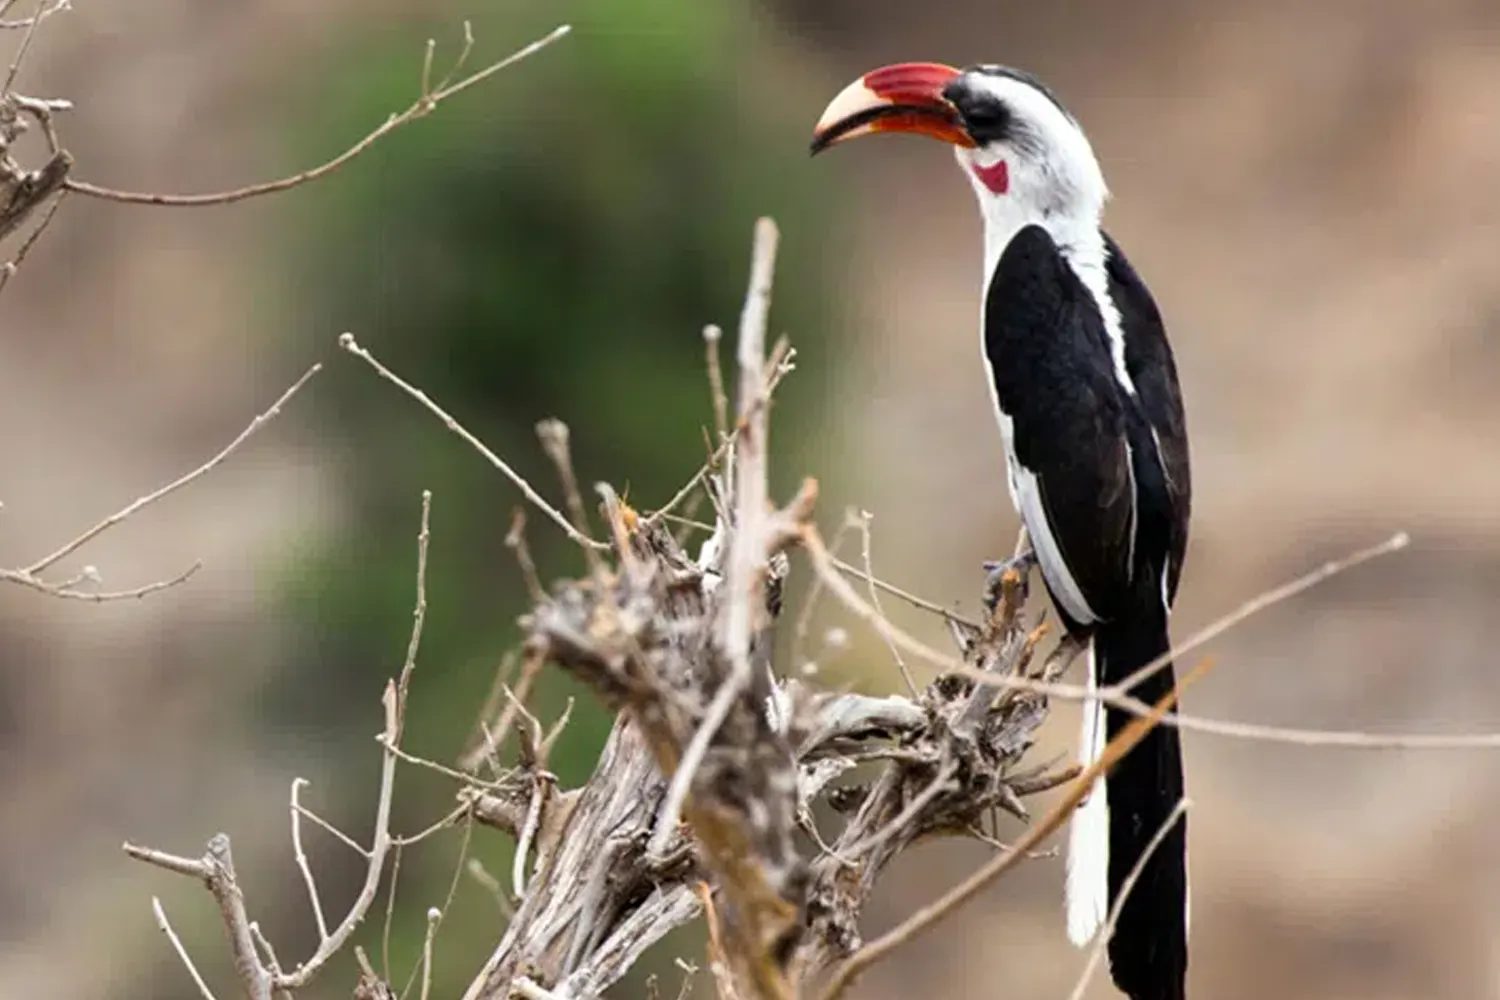 a bird spotted during 4-day Tanzania safari at Serengeti National Park